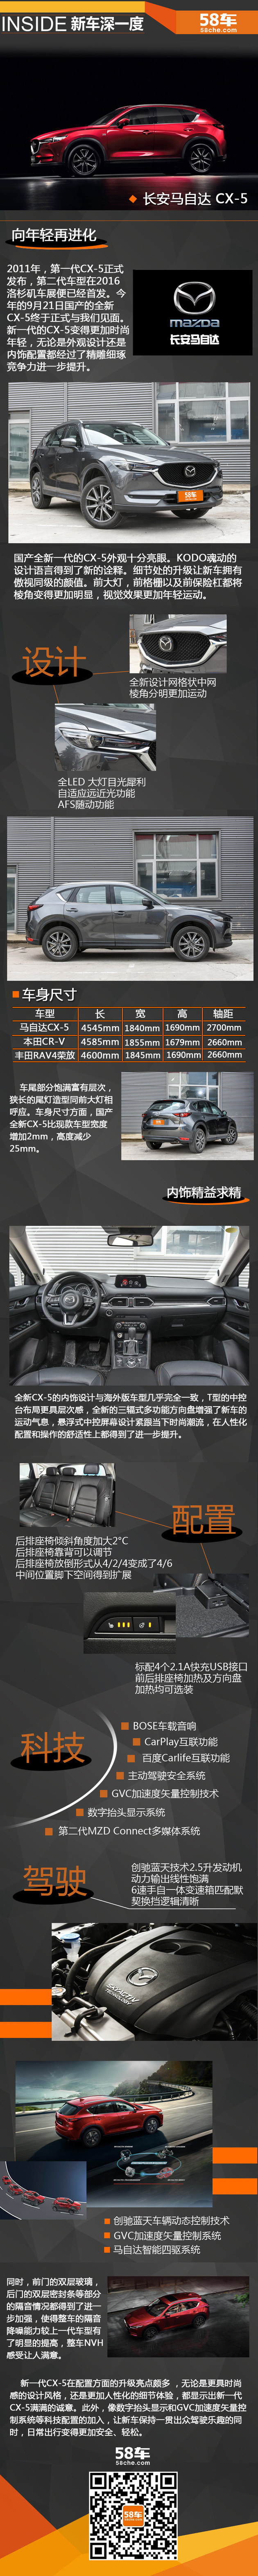 长安马自达全新CX-5 新车深一度解析